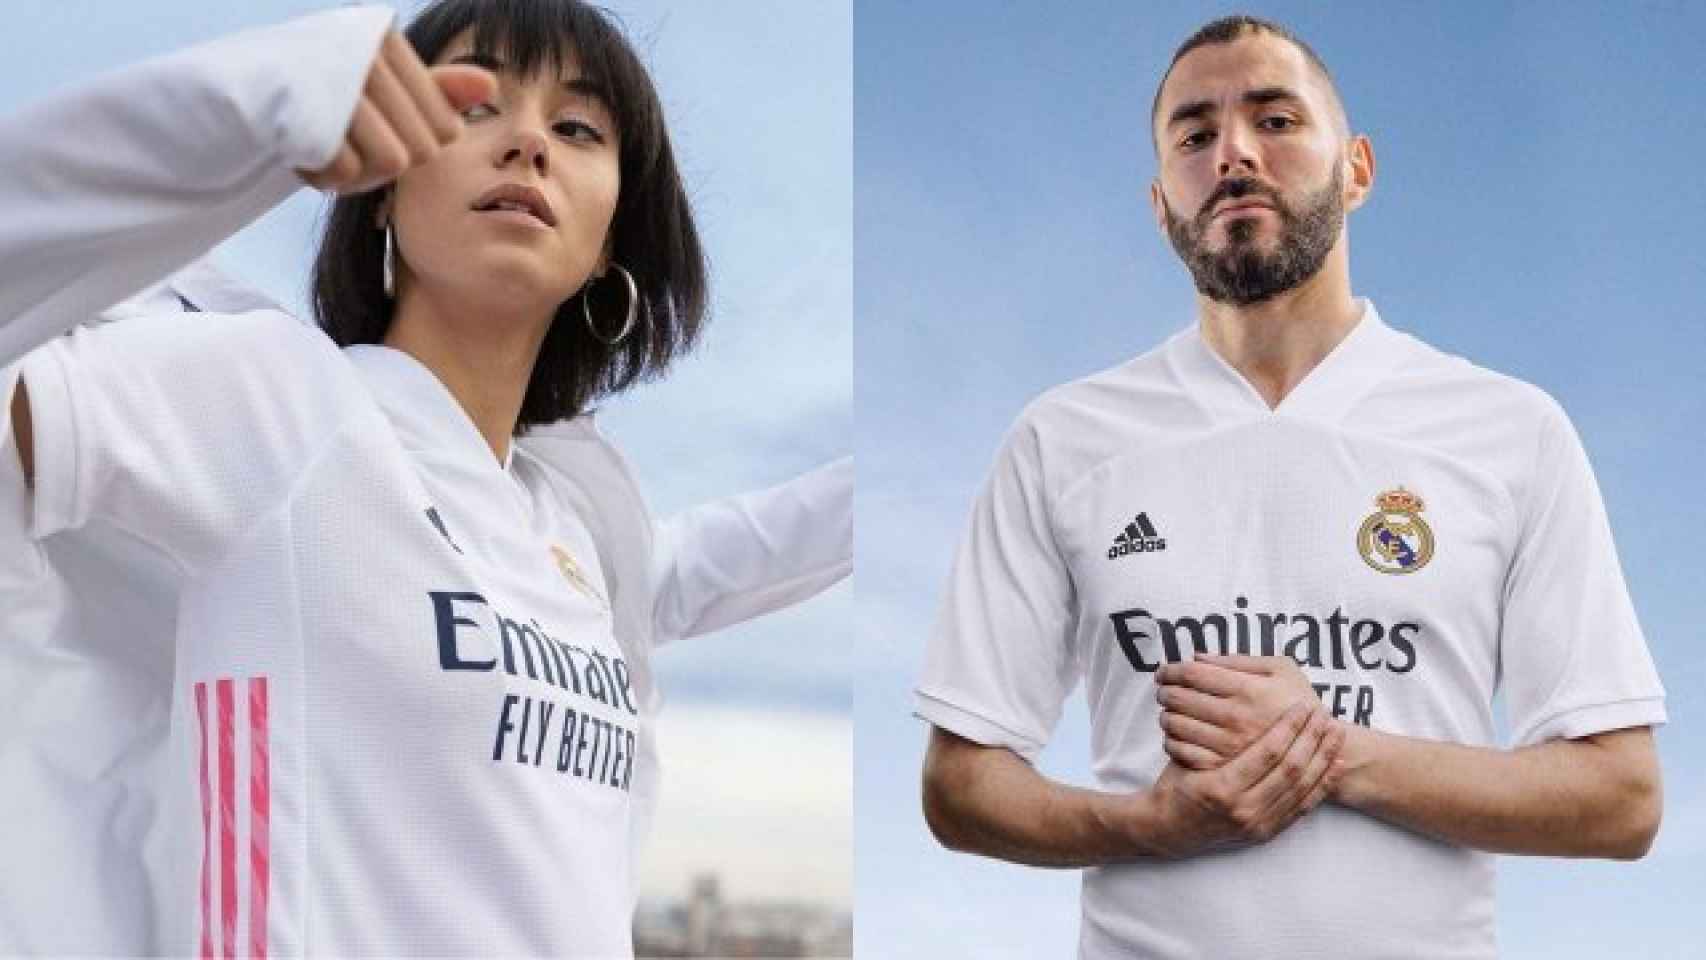 Personaliza la camiseta del Real Madrid 2020/2021 con tu nombre y